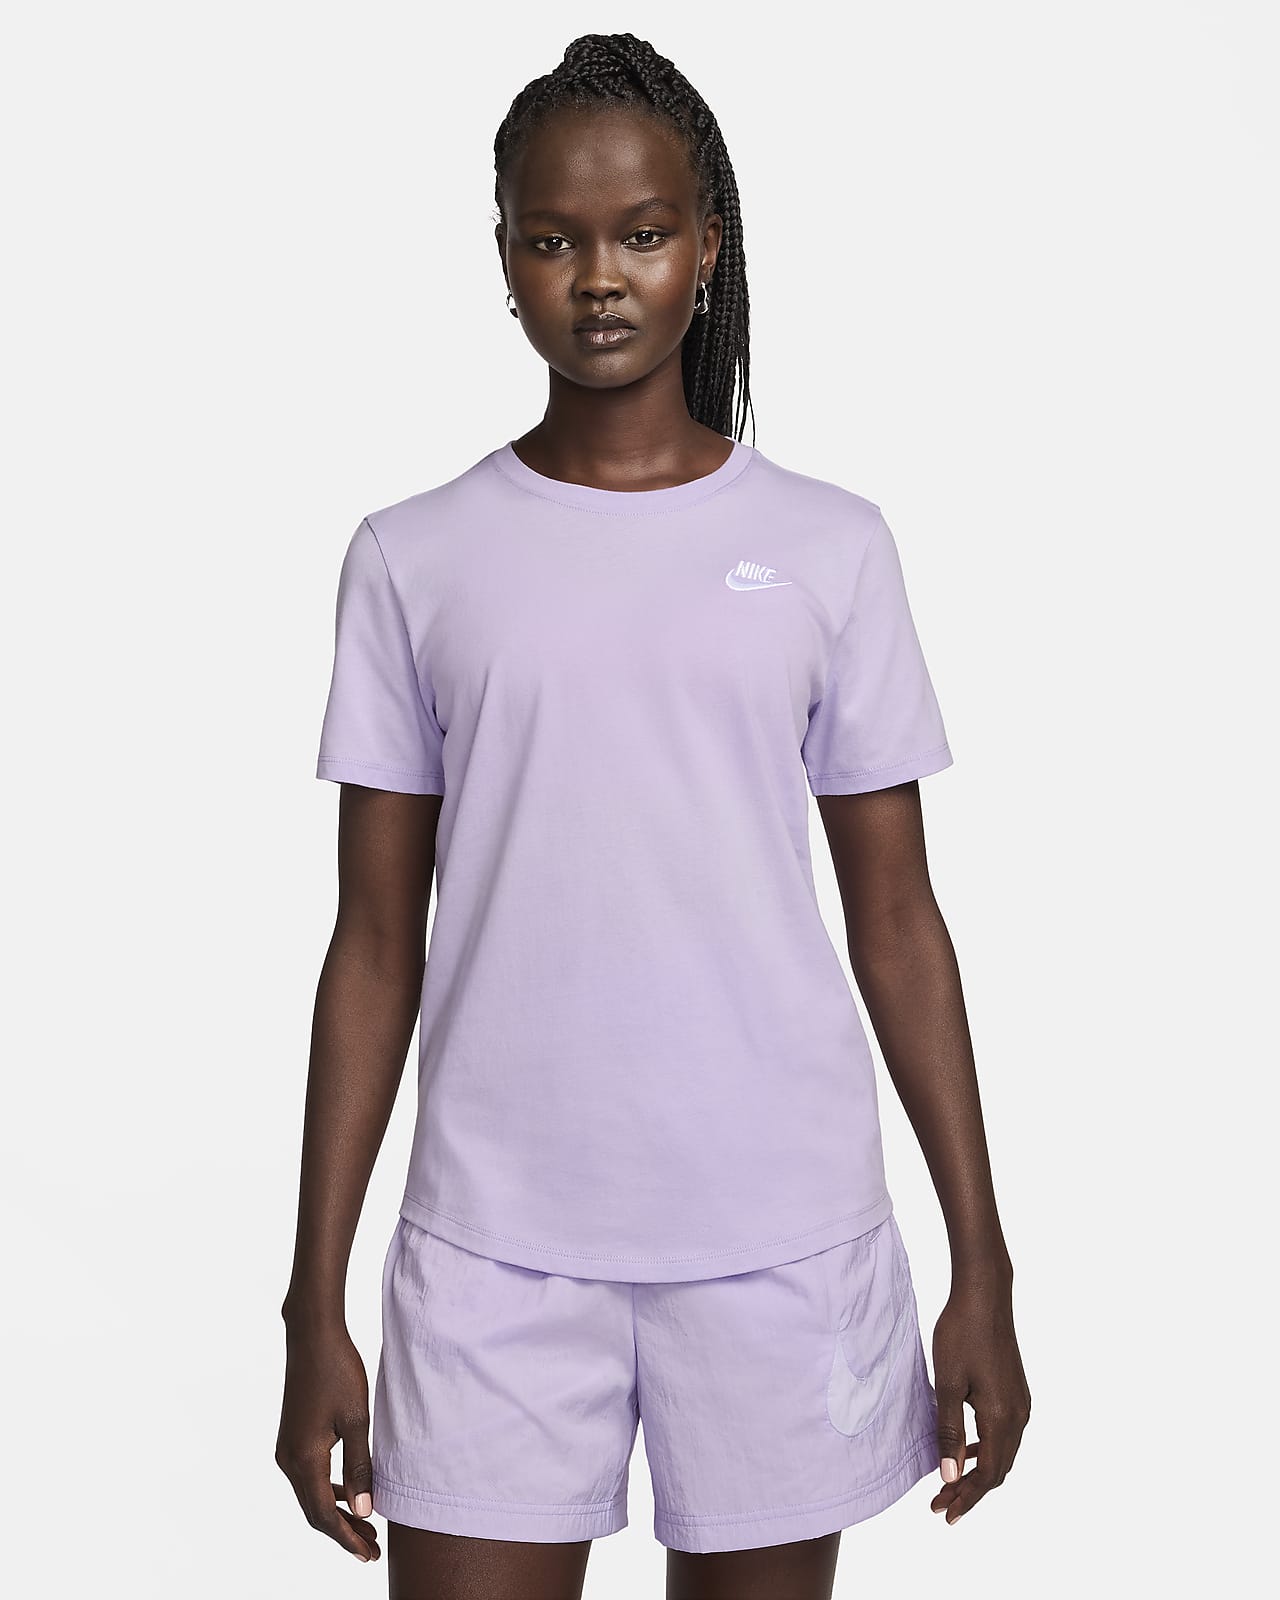 Women's Nike Sportswear Essential T Shirt